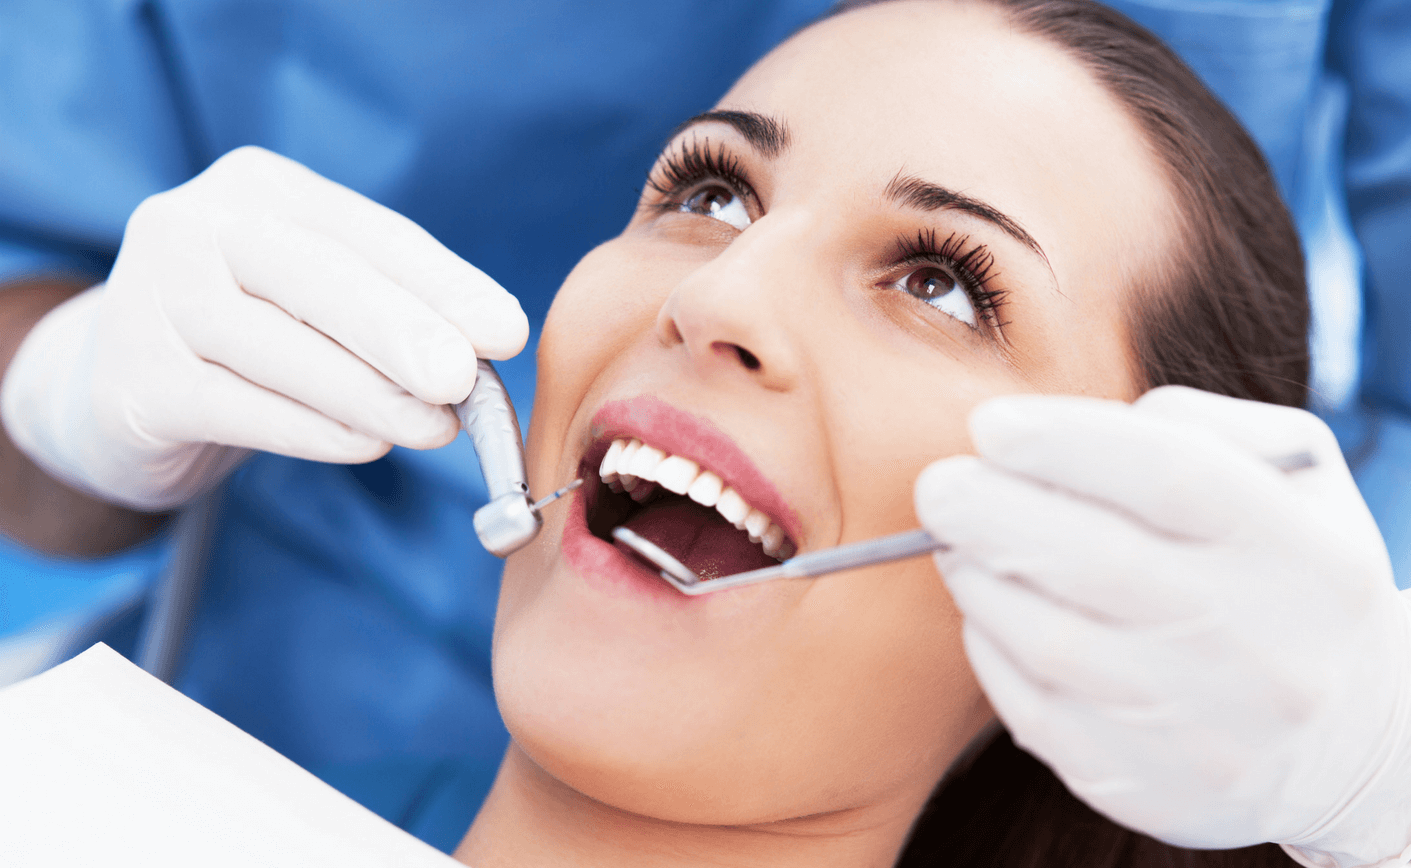 Dental practice in Maidstone